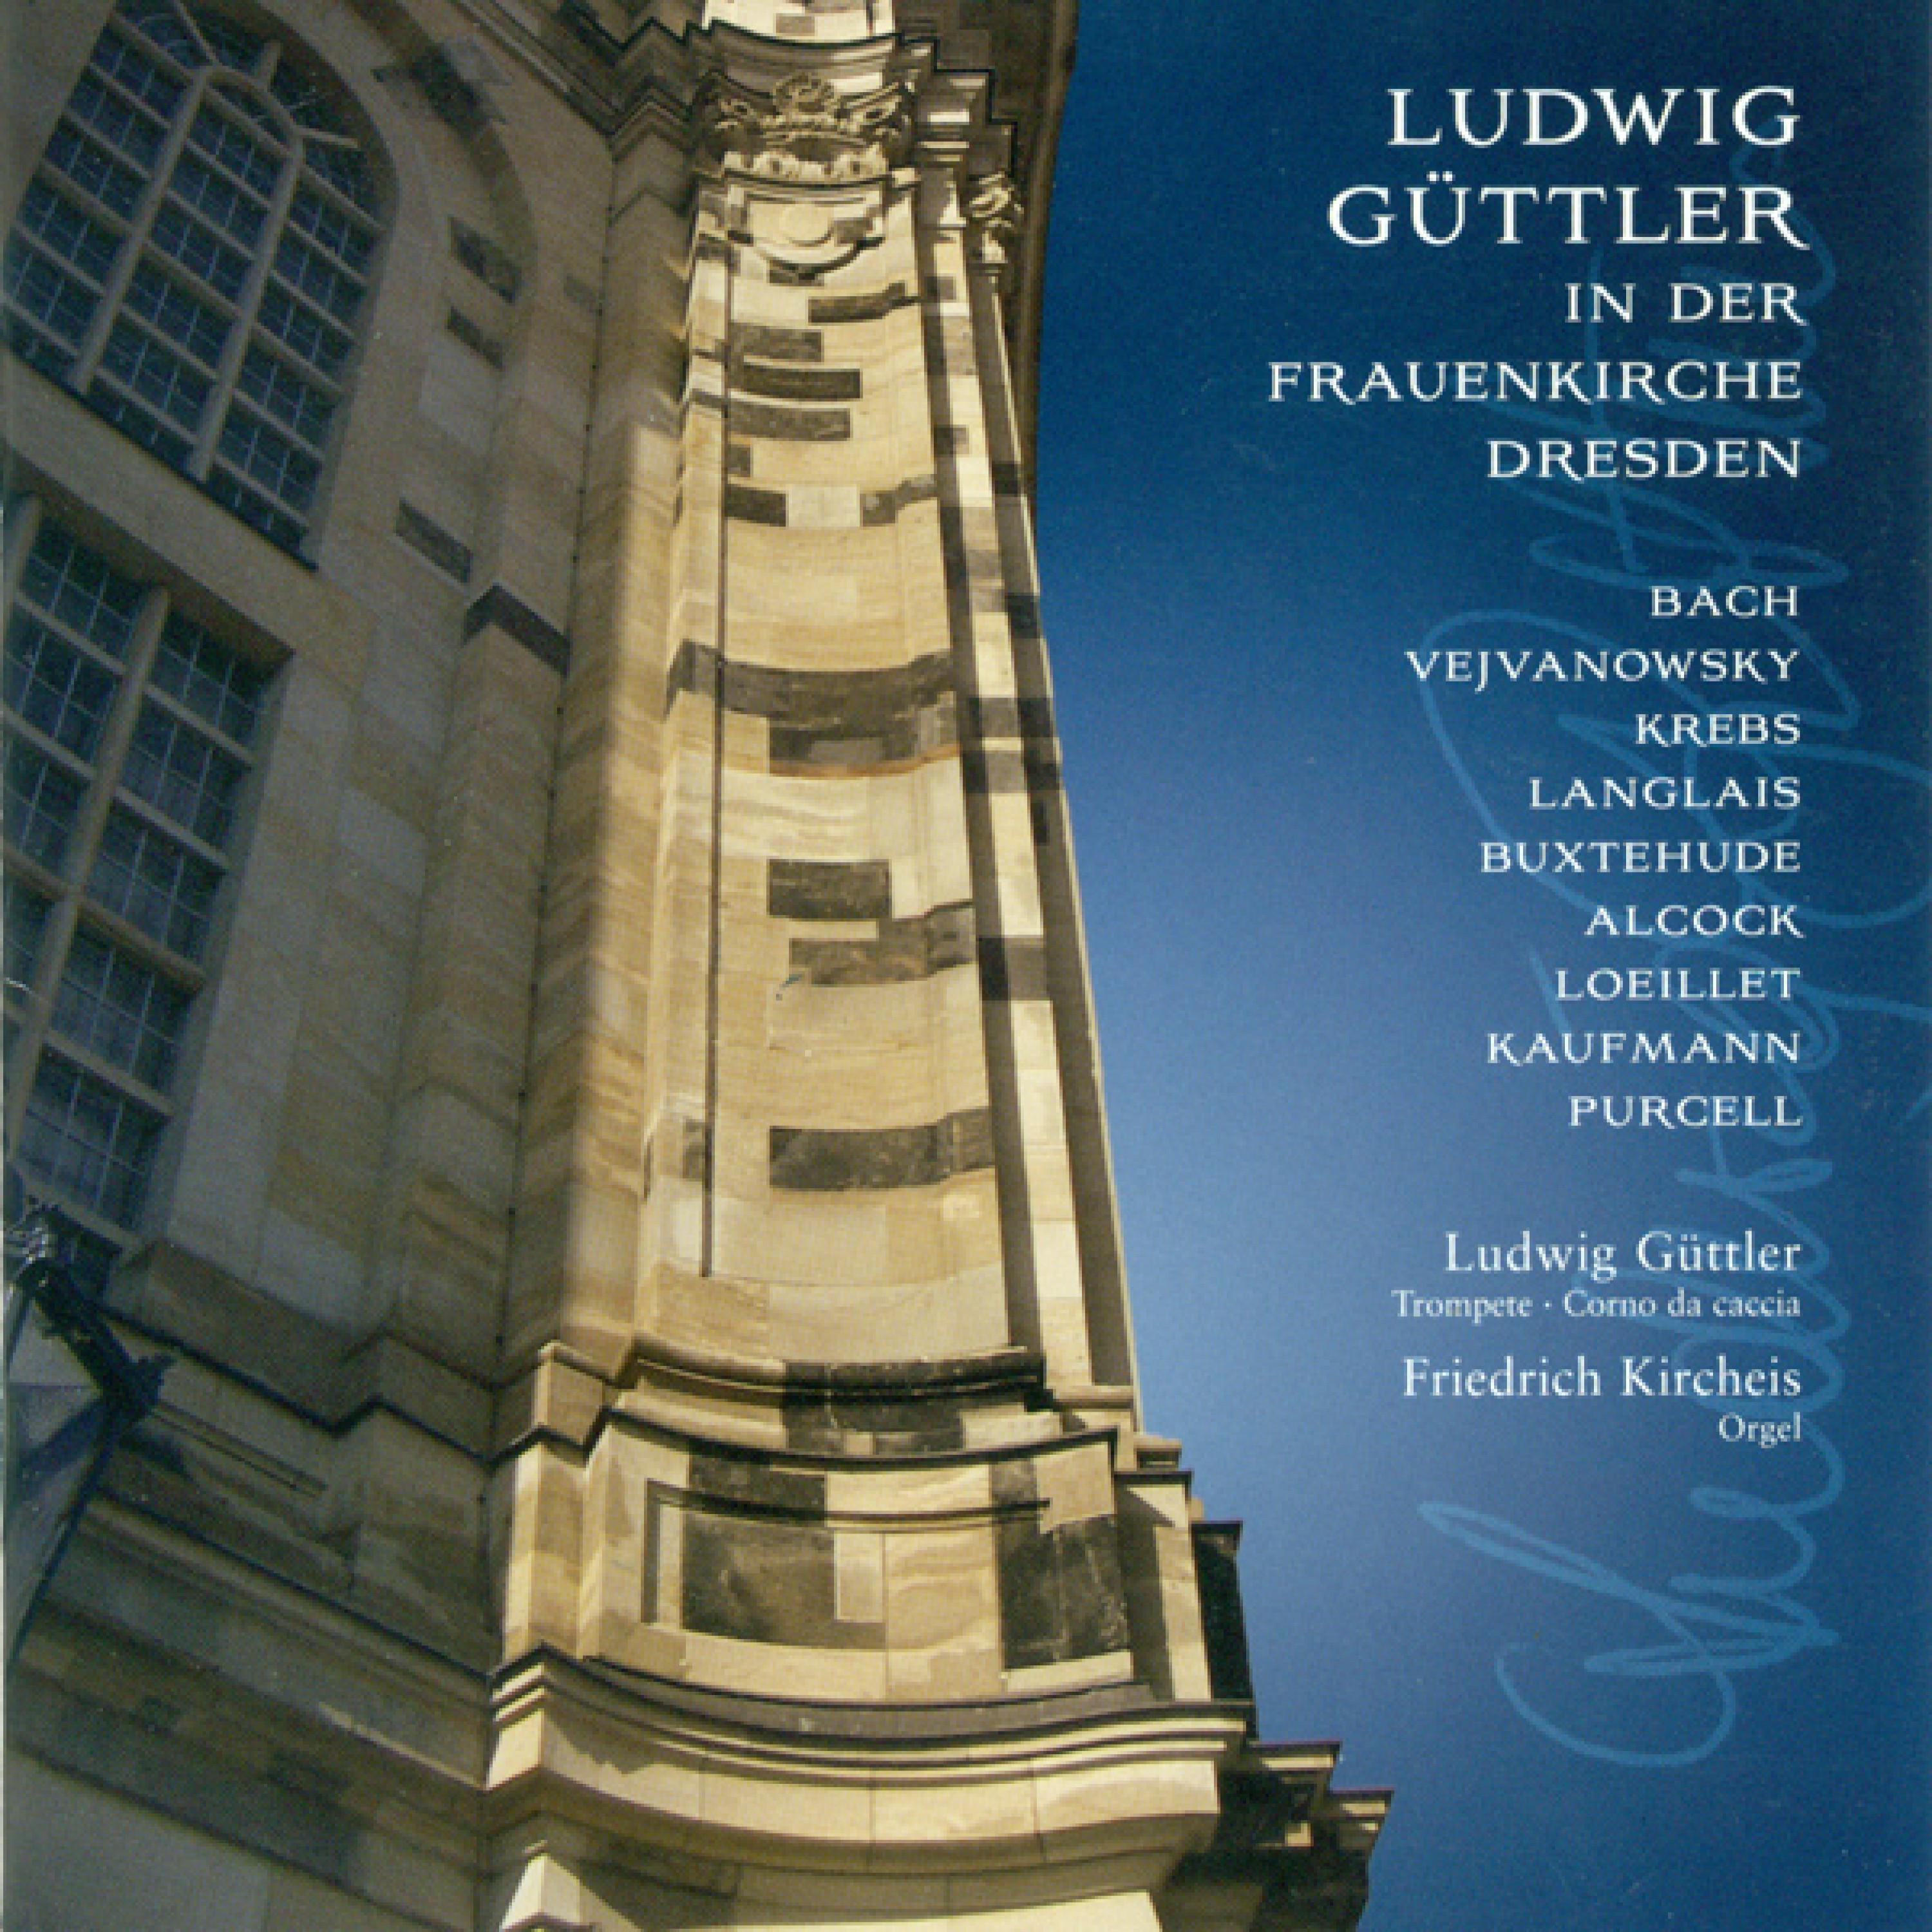 Chorale Preludes for Corno da Caccia and Organ: No. 26, "Lobt Gott, ihr Christen allzugleich", BuxWV 202